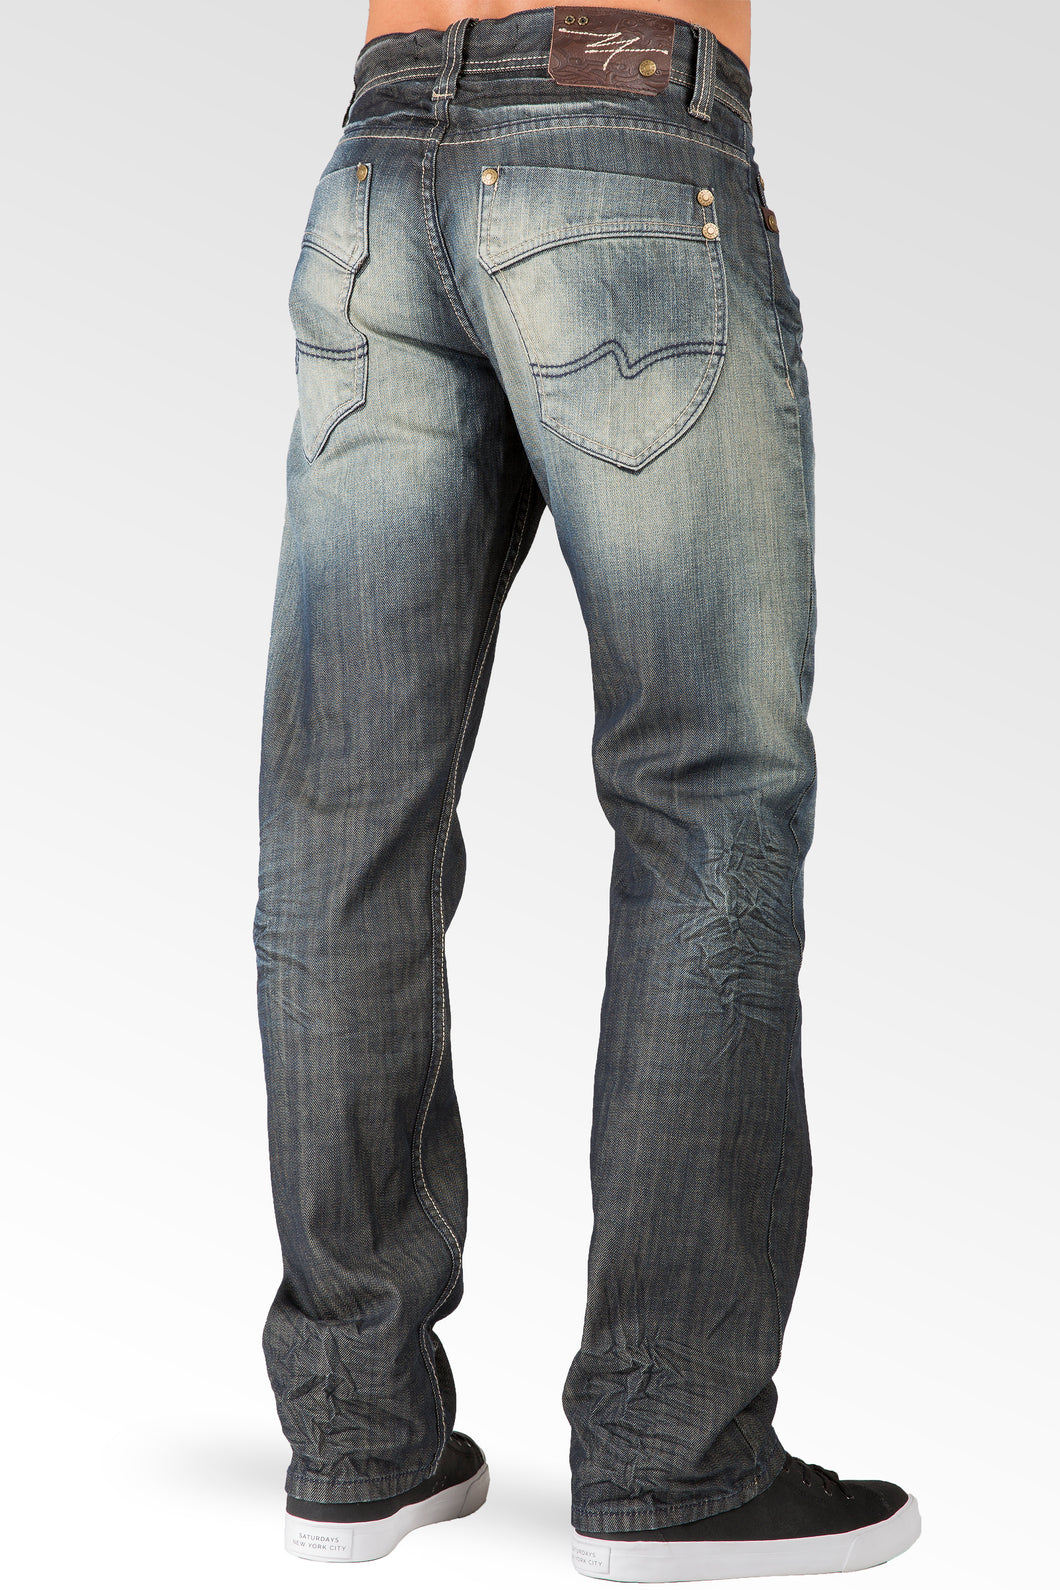 Level 7 Men's Relaxed Straight Dark Tint Premium Denim Jeans 5 pocket ...